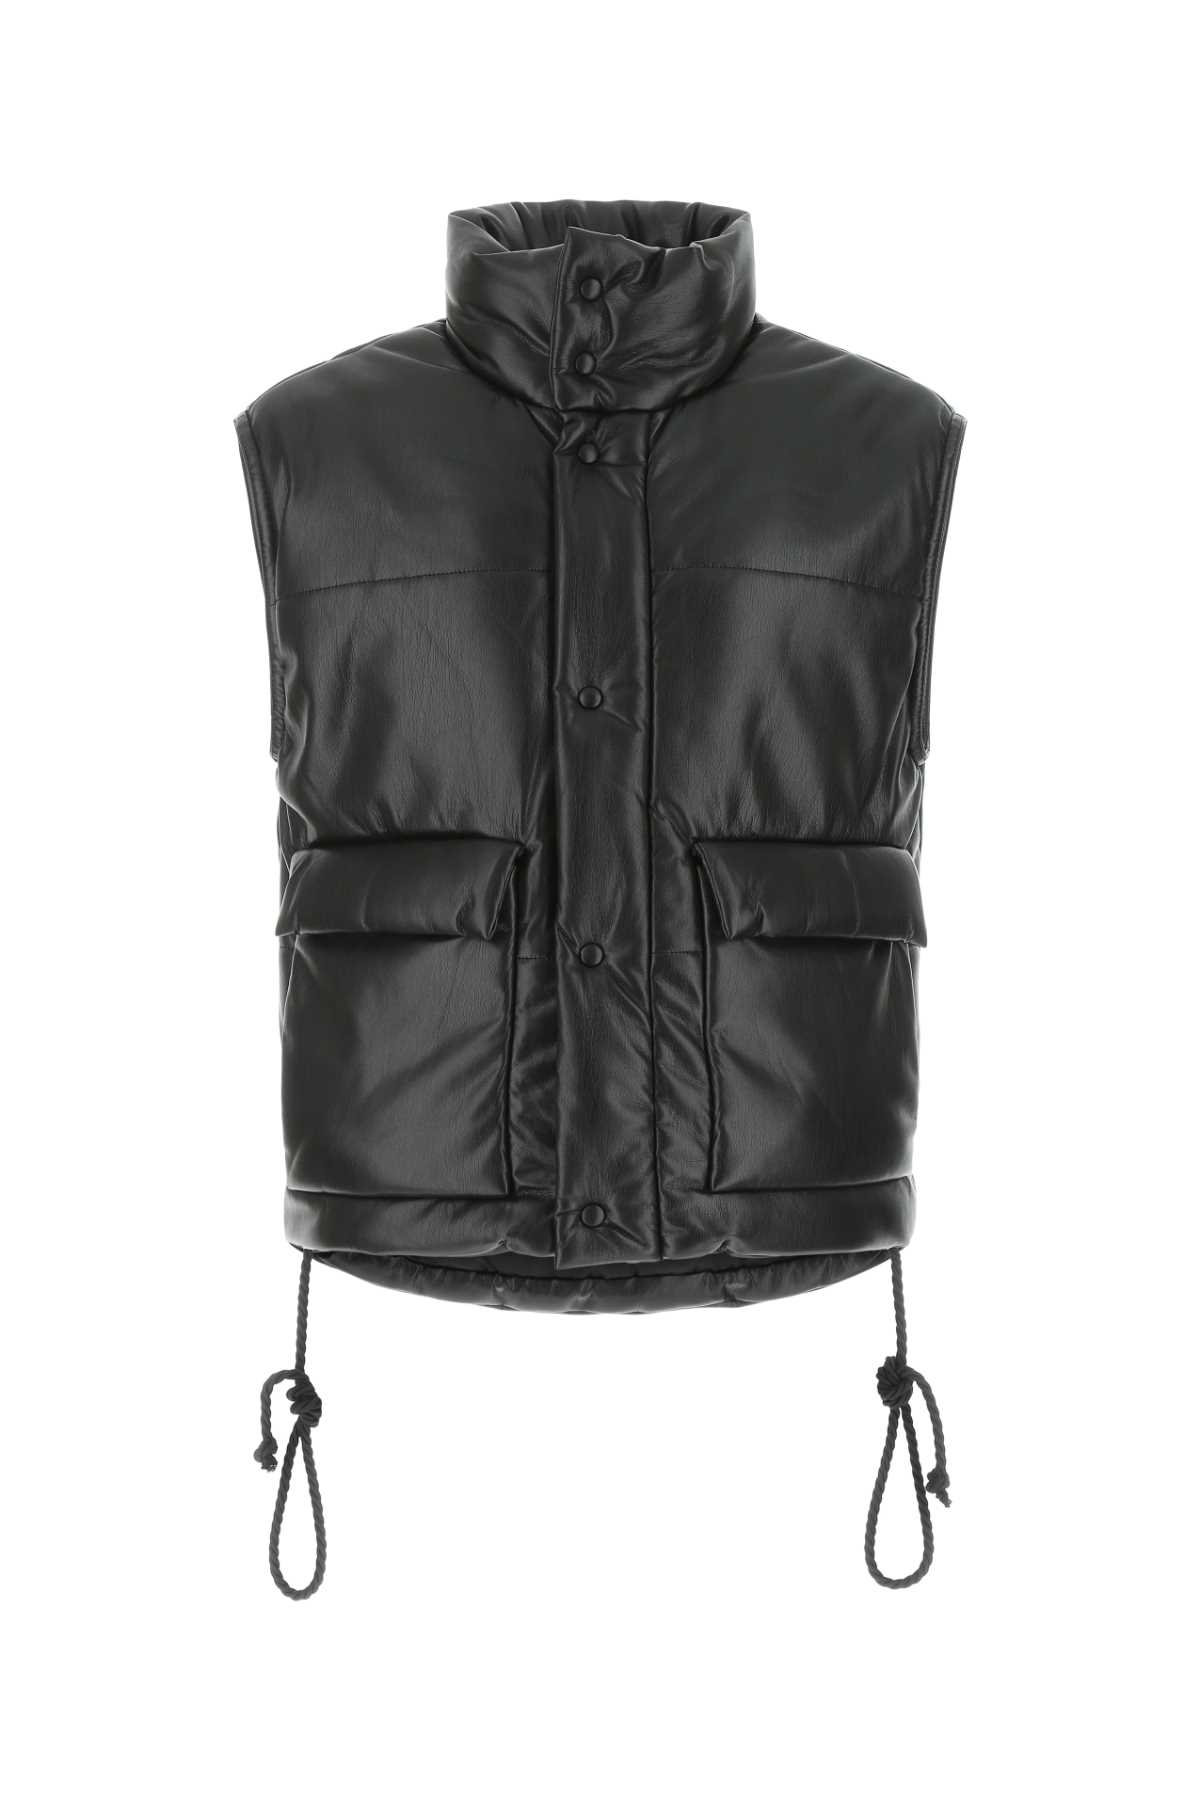 Shop Nanushka Black Synthetic Leather Padded Jacket